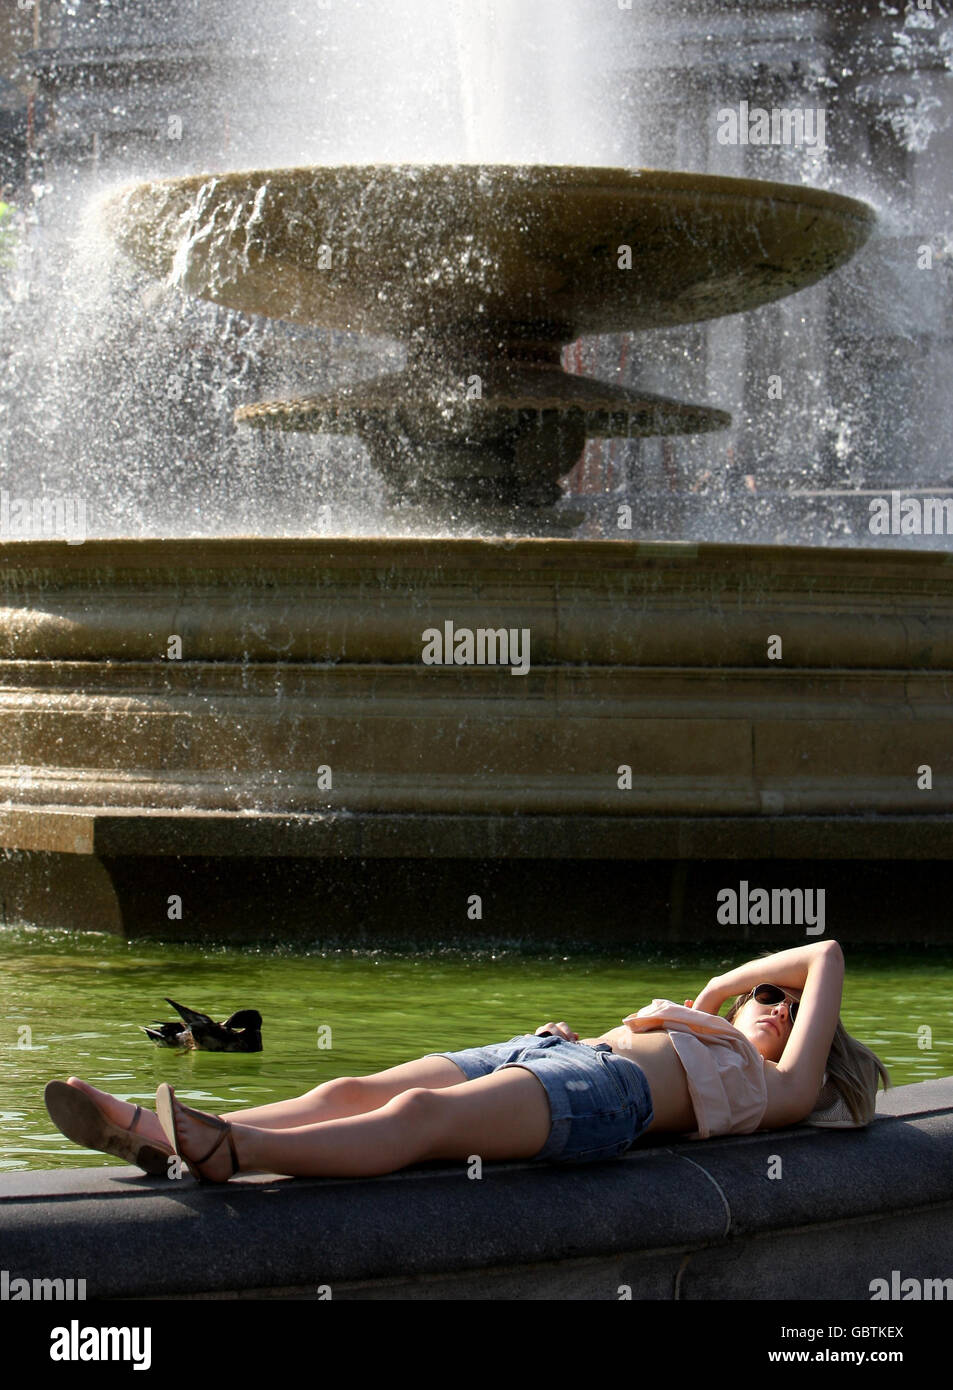 Eine Frau sonnen sich am Rande eines Brunnens am Trafalgar Square im Zentrum von London, der aufgrund einer Algenbildung grünes Wasser hat. Stockfoto